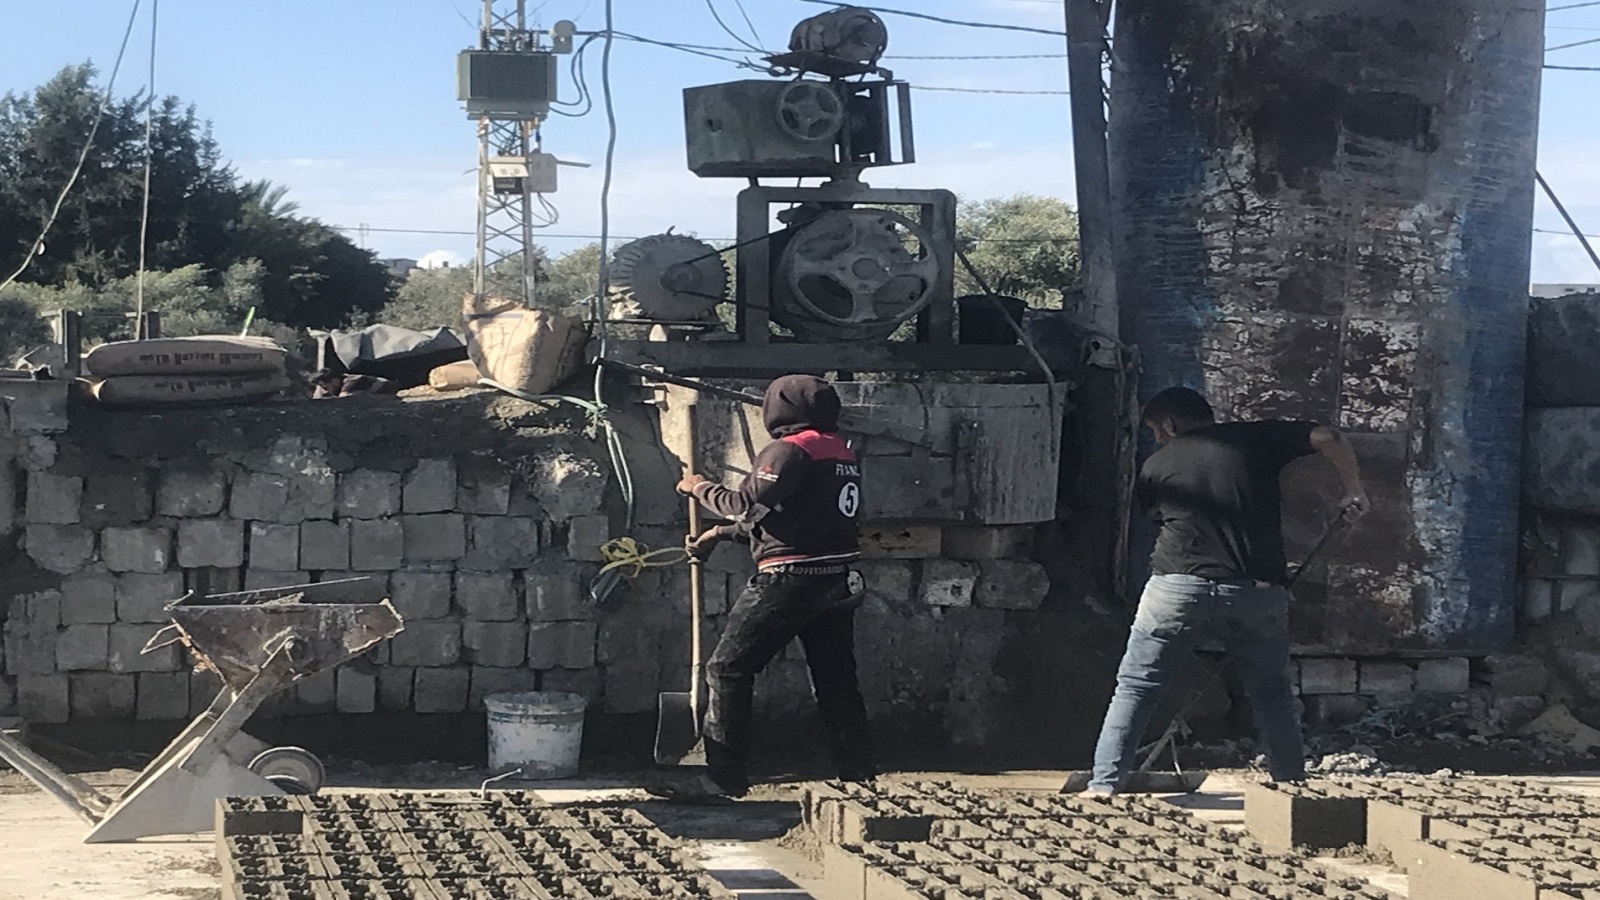 ‪عمال ينتجون أحجار بناء صديقة للبيئة في معمل ببلدة بيت حانون شمال غزة (الجزيرة)‬ عمال ينتجون أحجار بناء صديقة للبيئة في معمل ببلدة بيت حانون شمال غزة (الجزيرة)